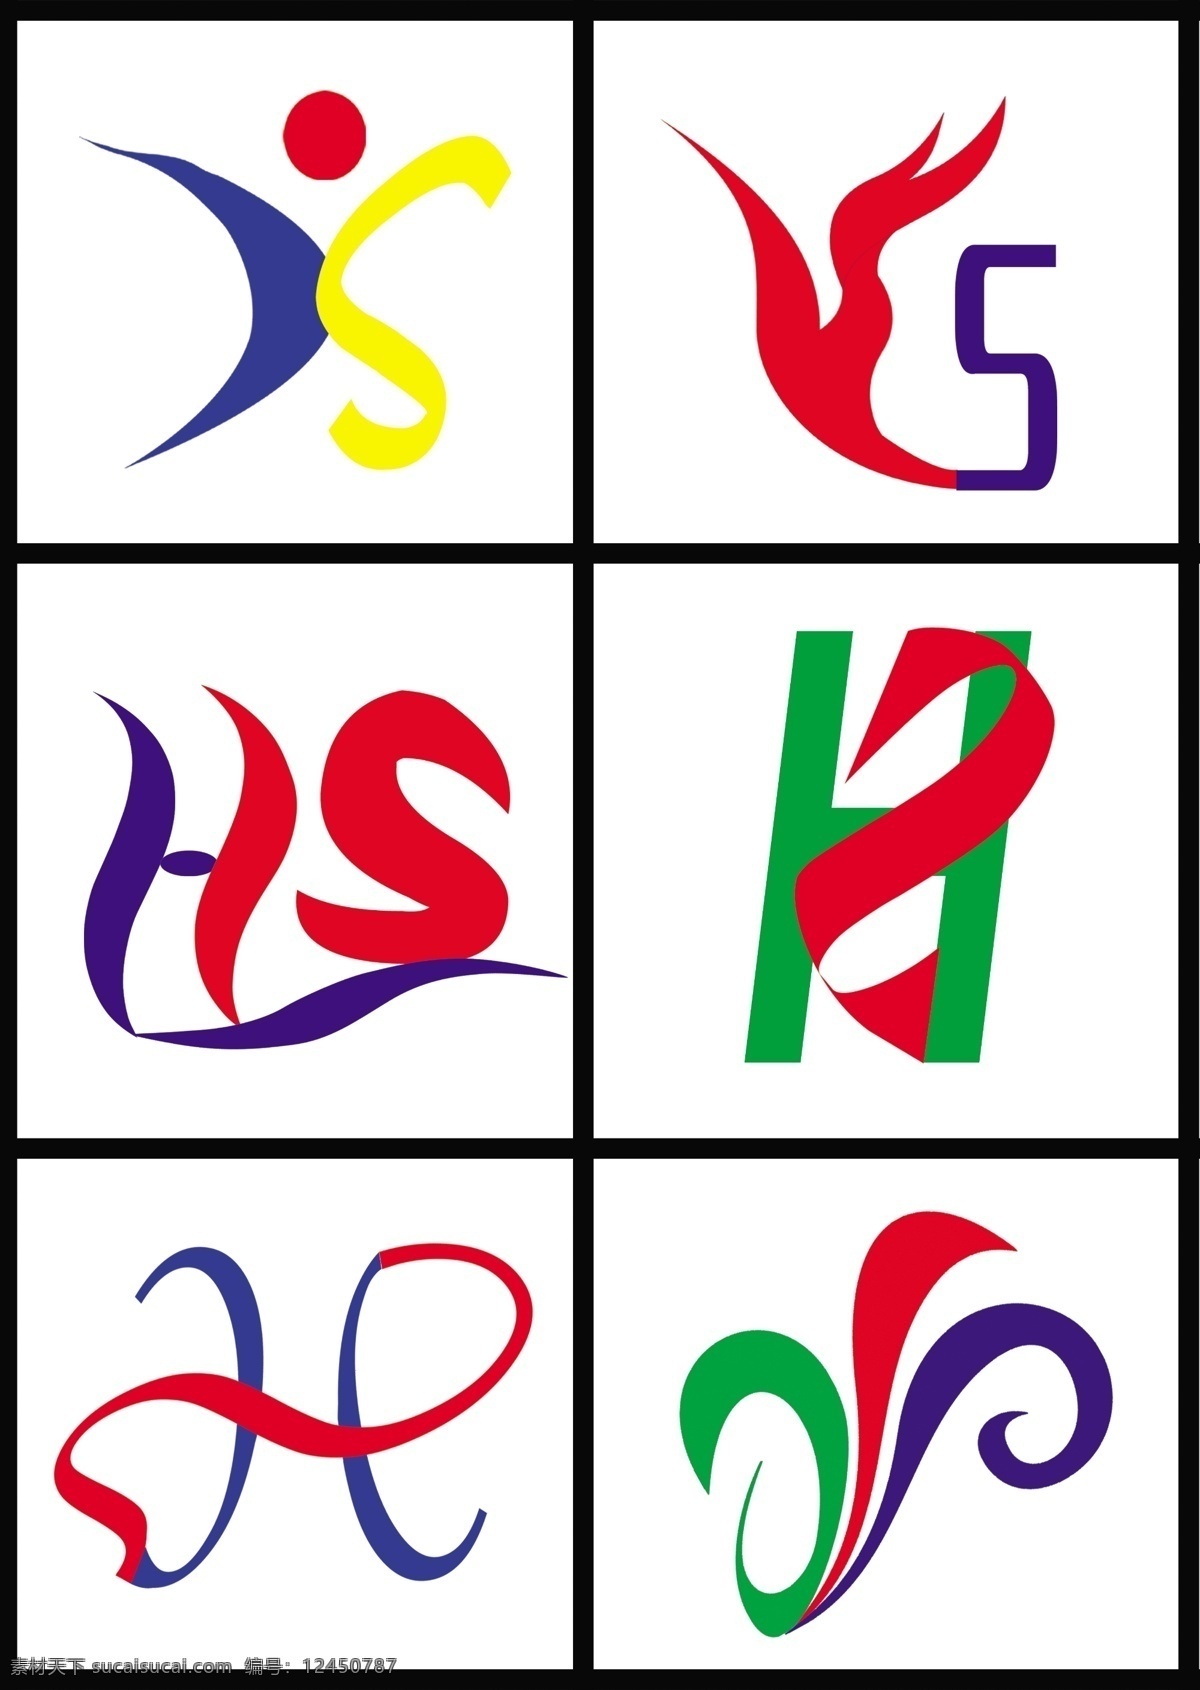 标志免费下载 logo 分层 标志 源文件 永上标志 和硕标志 ys hs psd源文件 logo设计